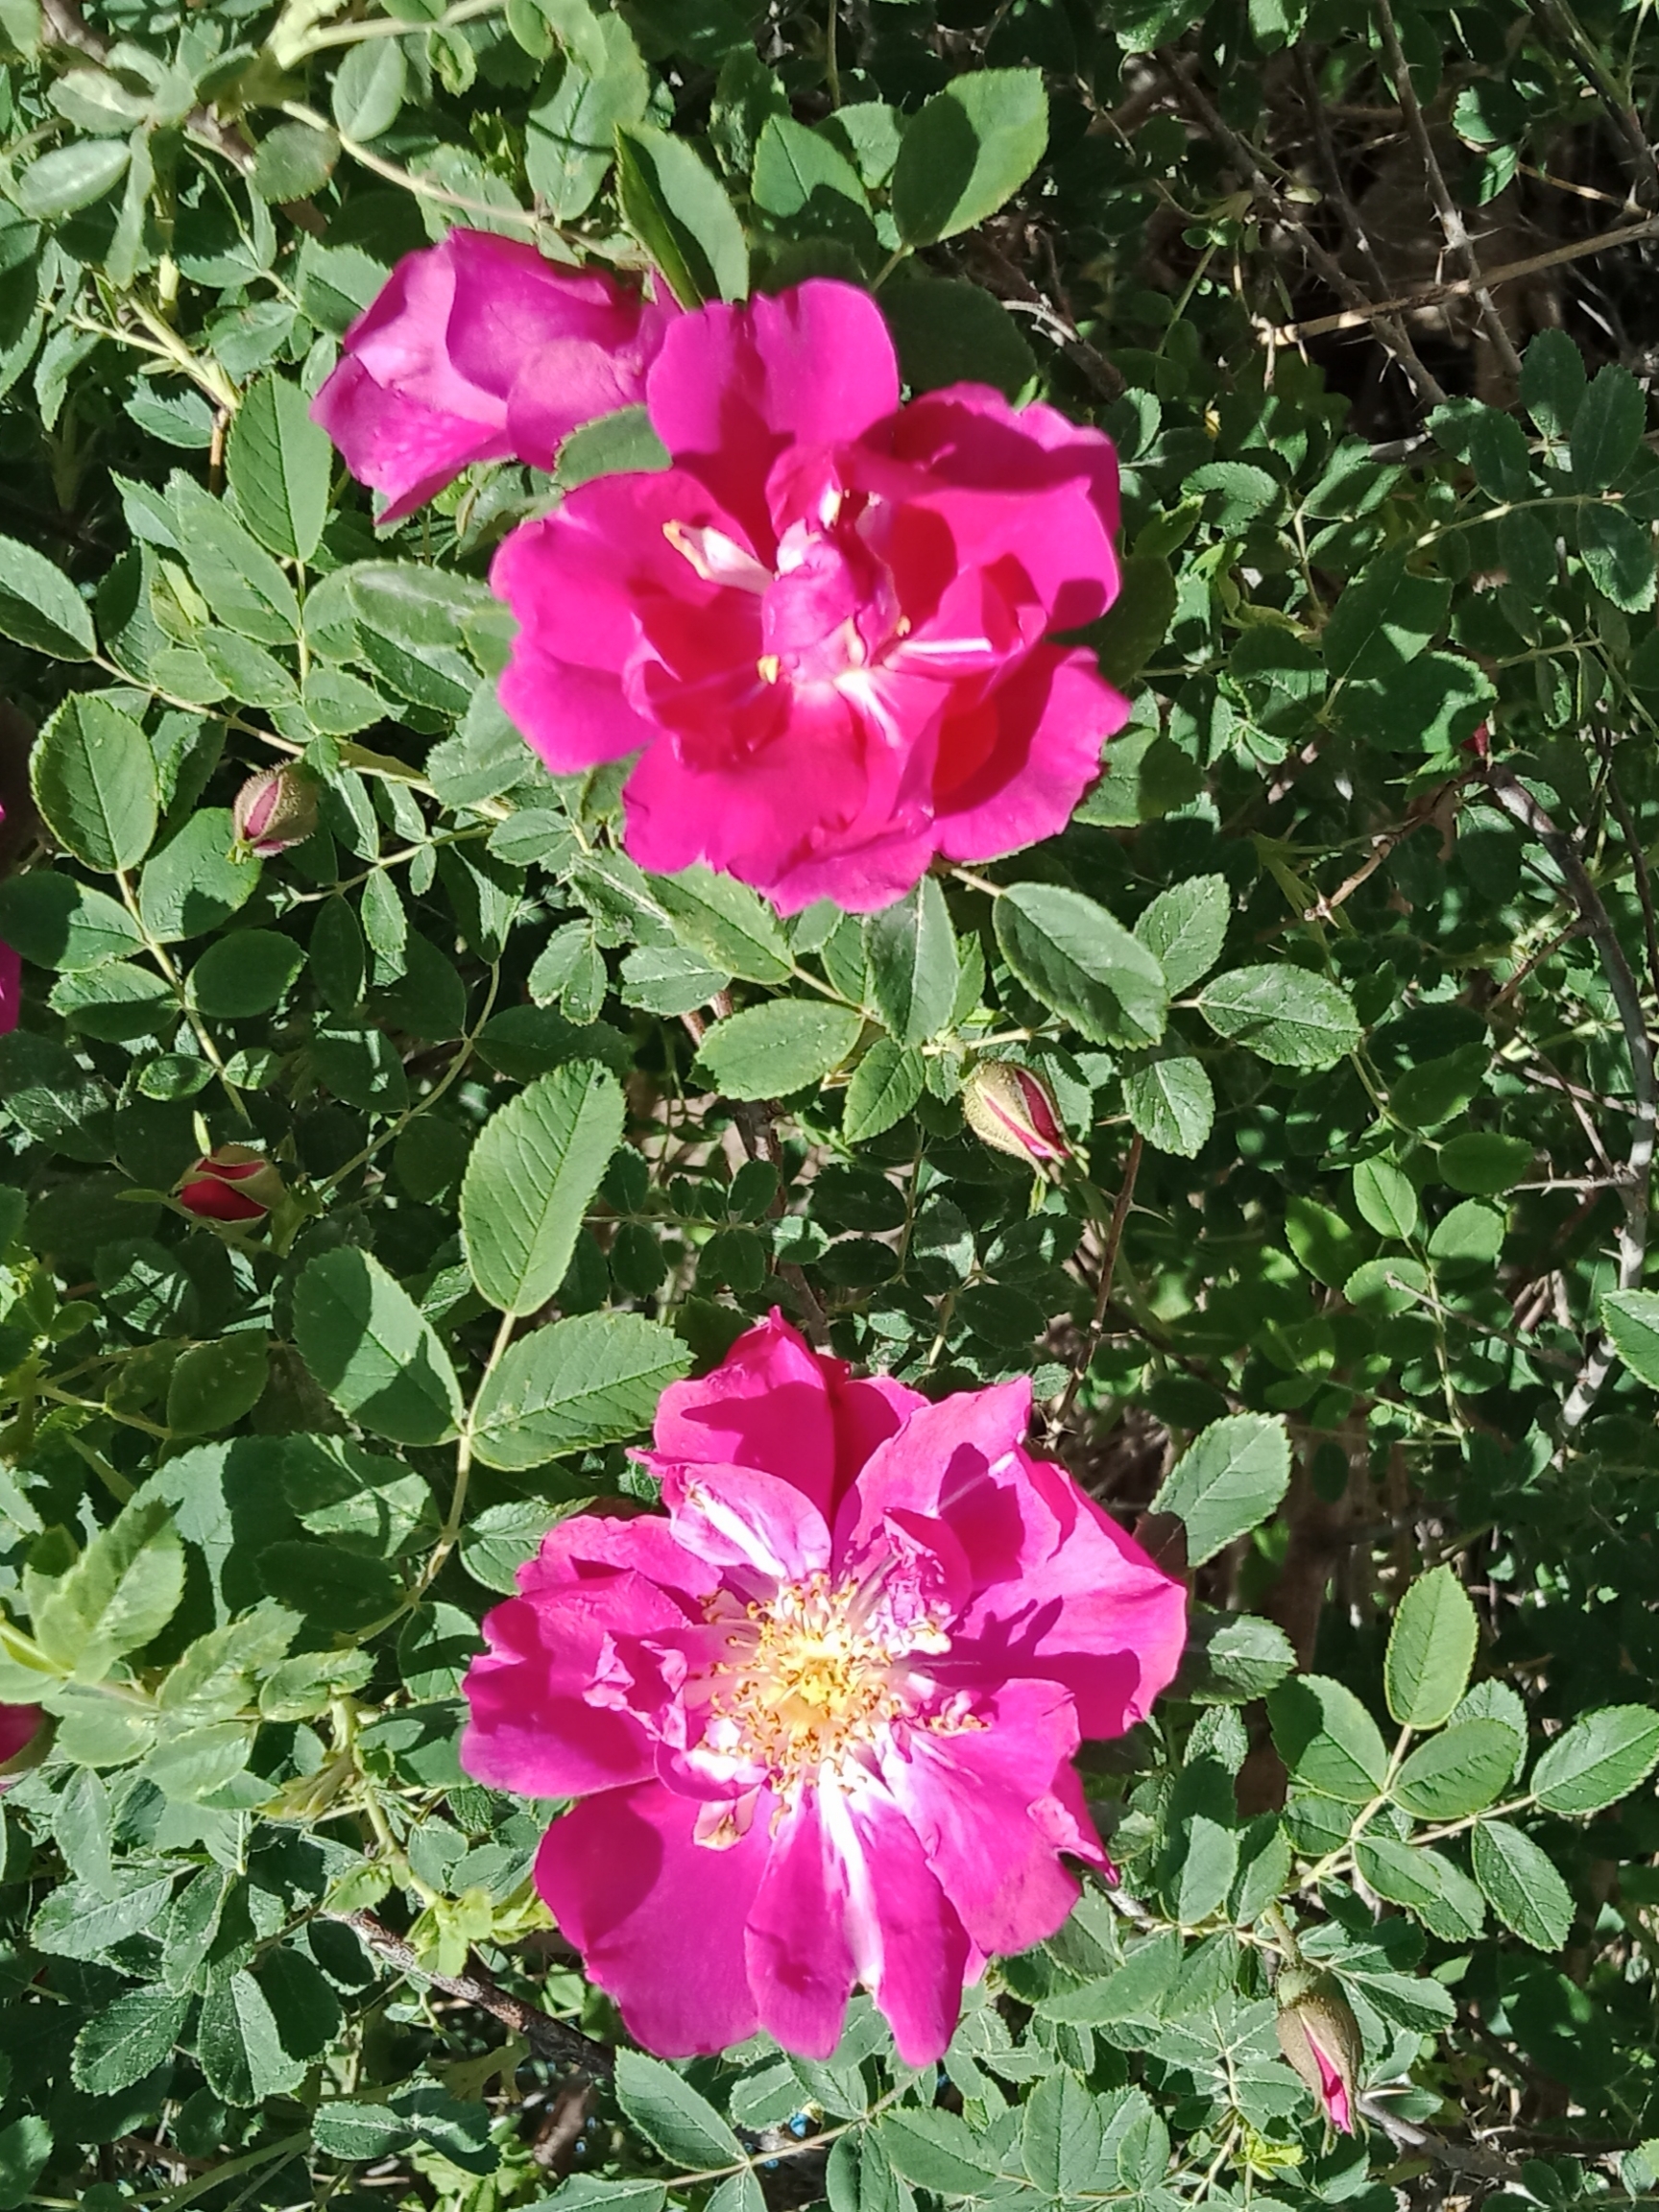 野玫瑰 蔷薇科蔷薇属落叶灌木.树 满荆棘,夏天开花为粉红色,有香味.